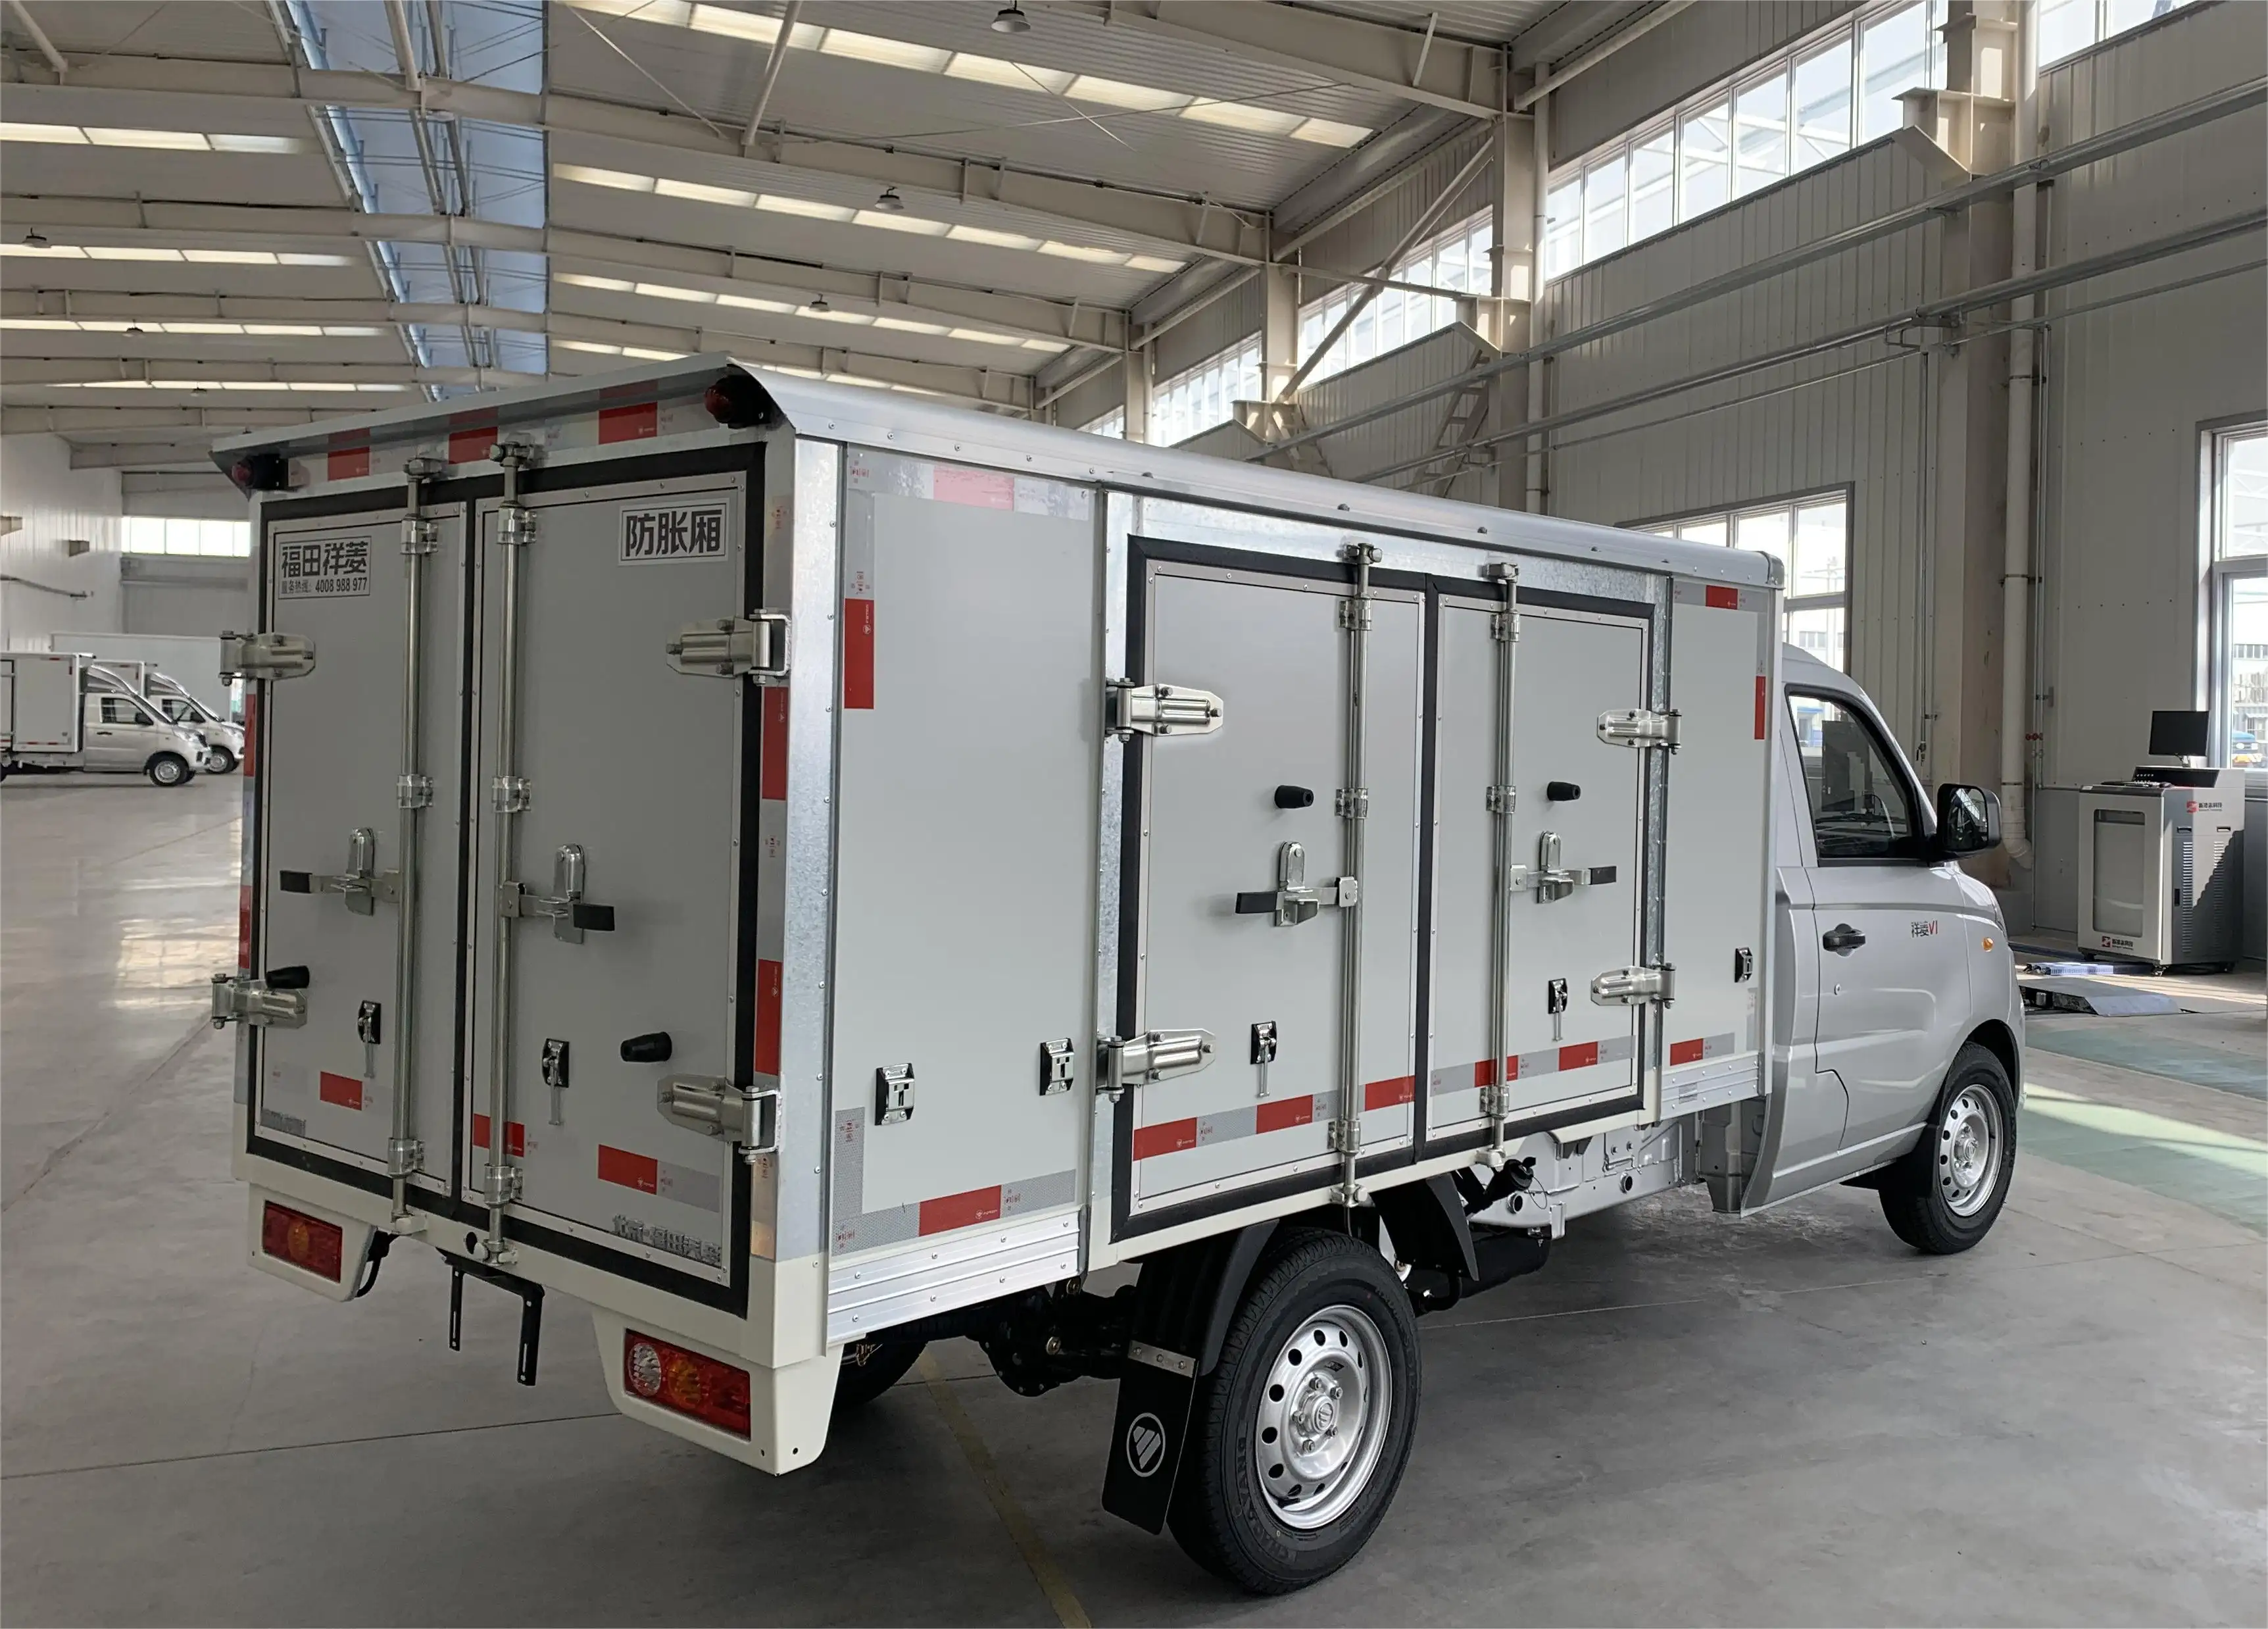 รถตู้ขนาดเล็กกล่องรถบรรทุก 1T กําลังโหลด FOTON รถตู้บรรทุกสินค้าเบนซินขนาดเล็ก 4x2 โรงงาน